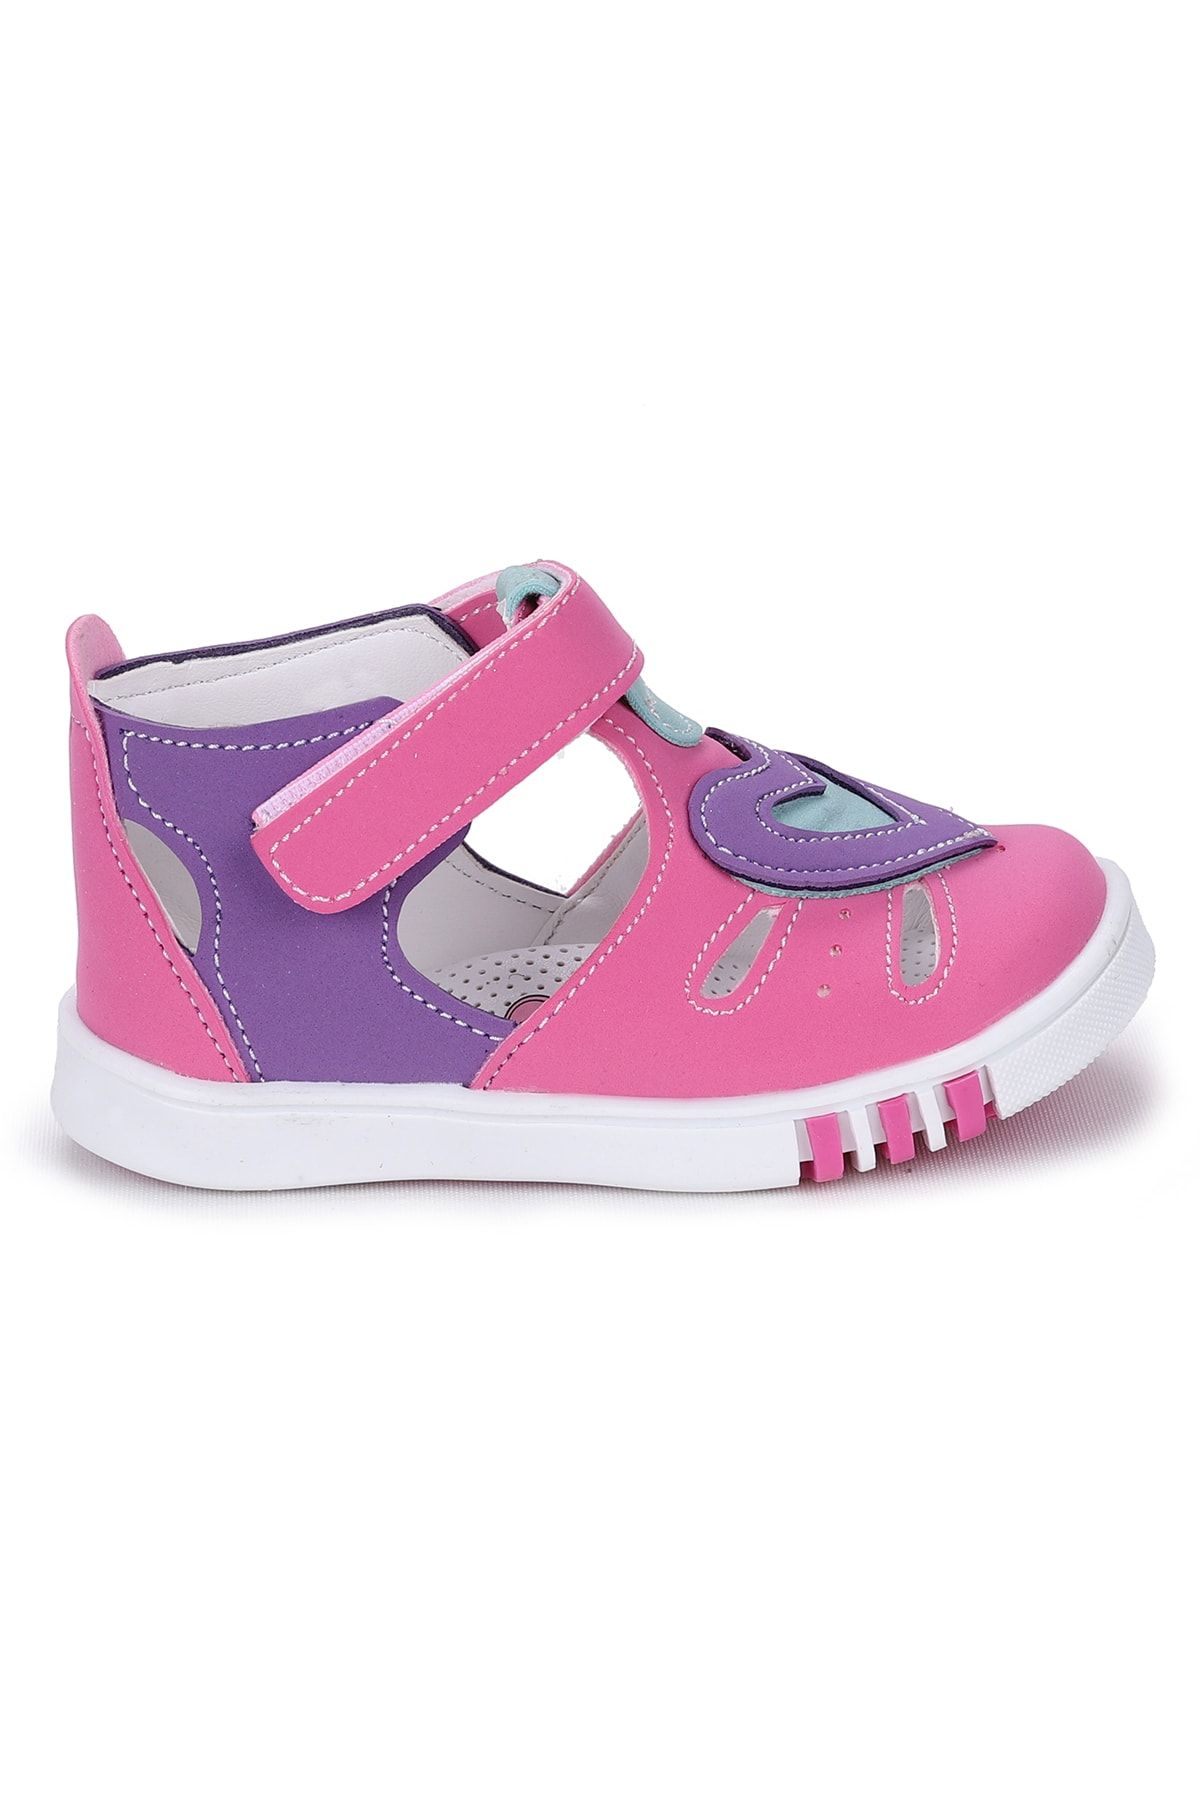 Kiko Kids Çocuk Ilk Adım Ayakkabı Sandalet